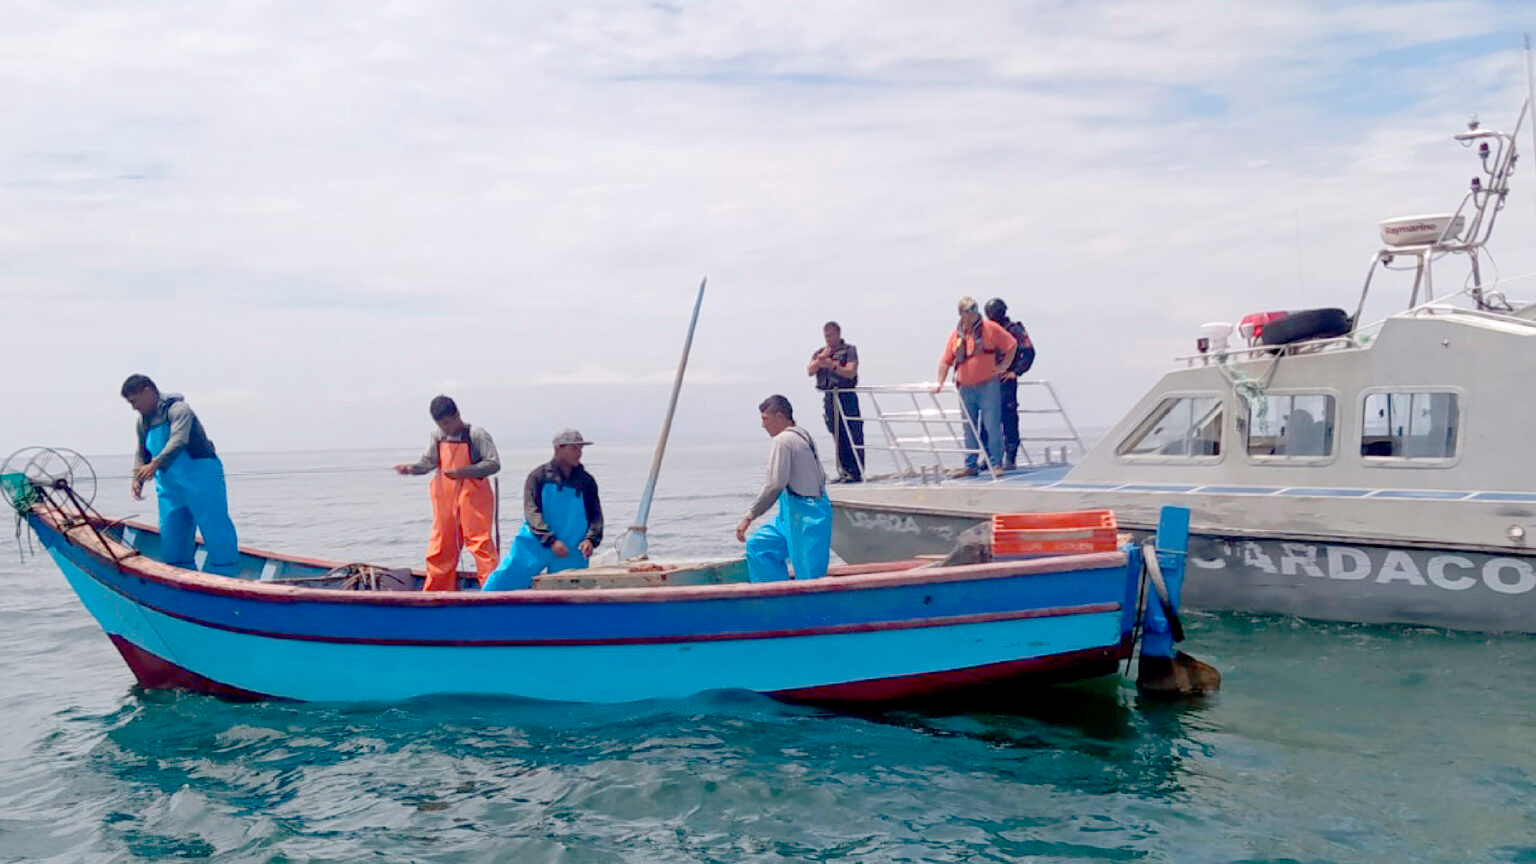 El objetivo de la visita es evaluar los avances del país para detener la pesca ilegal. Foto: Archivo.